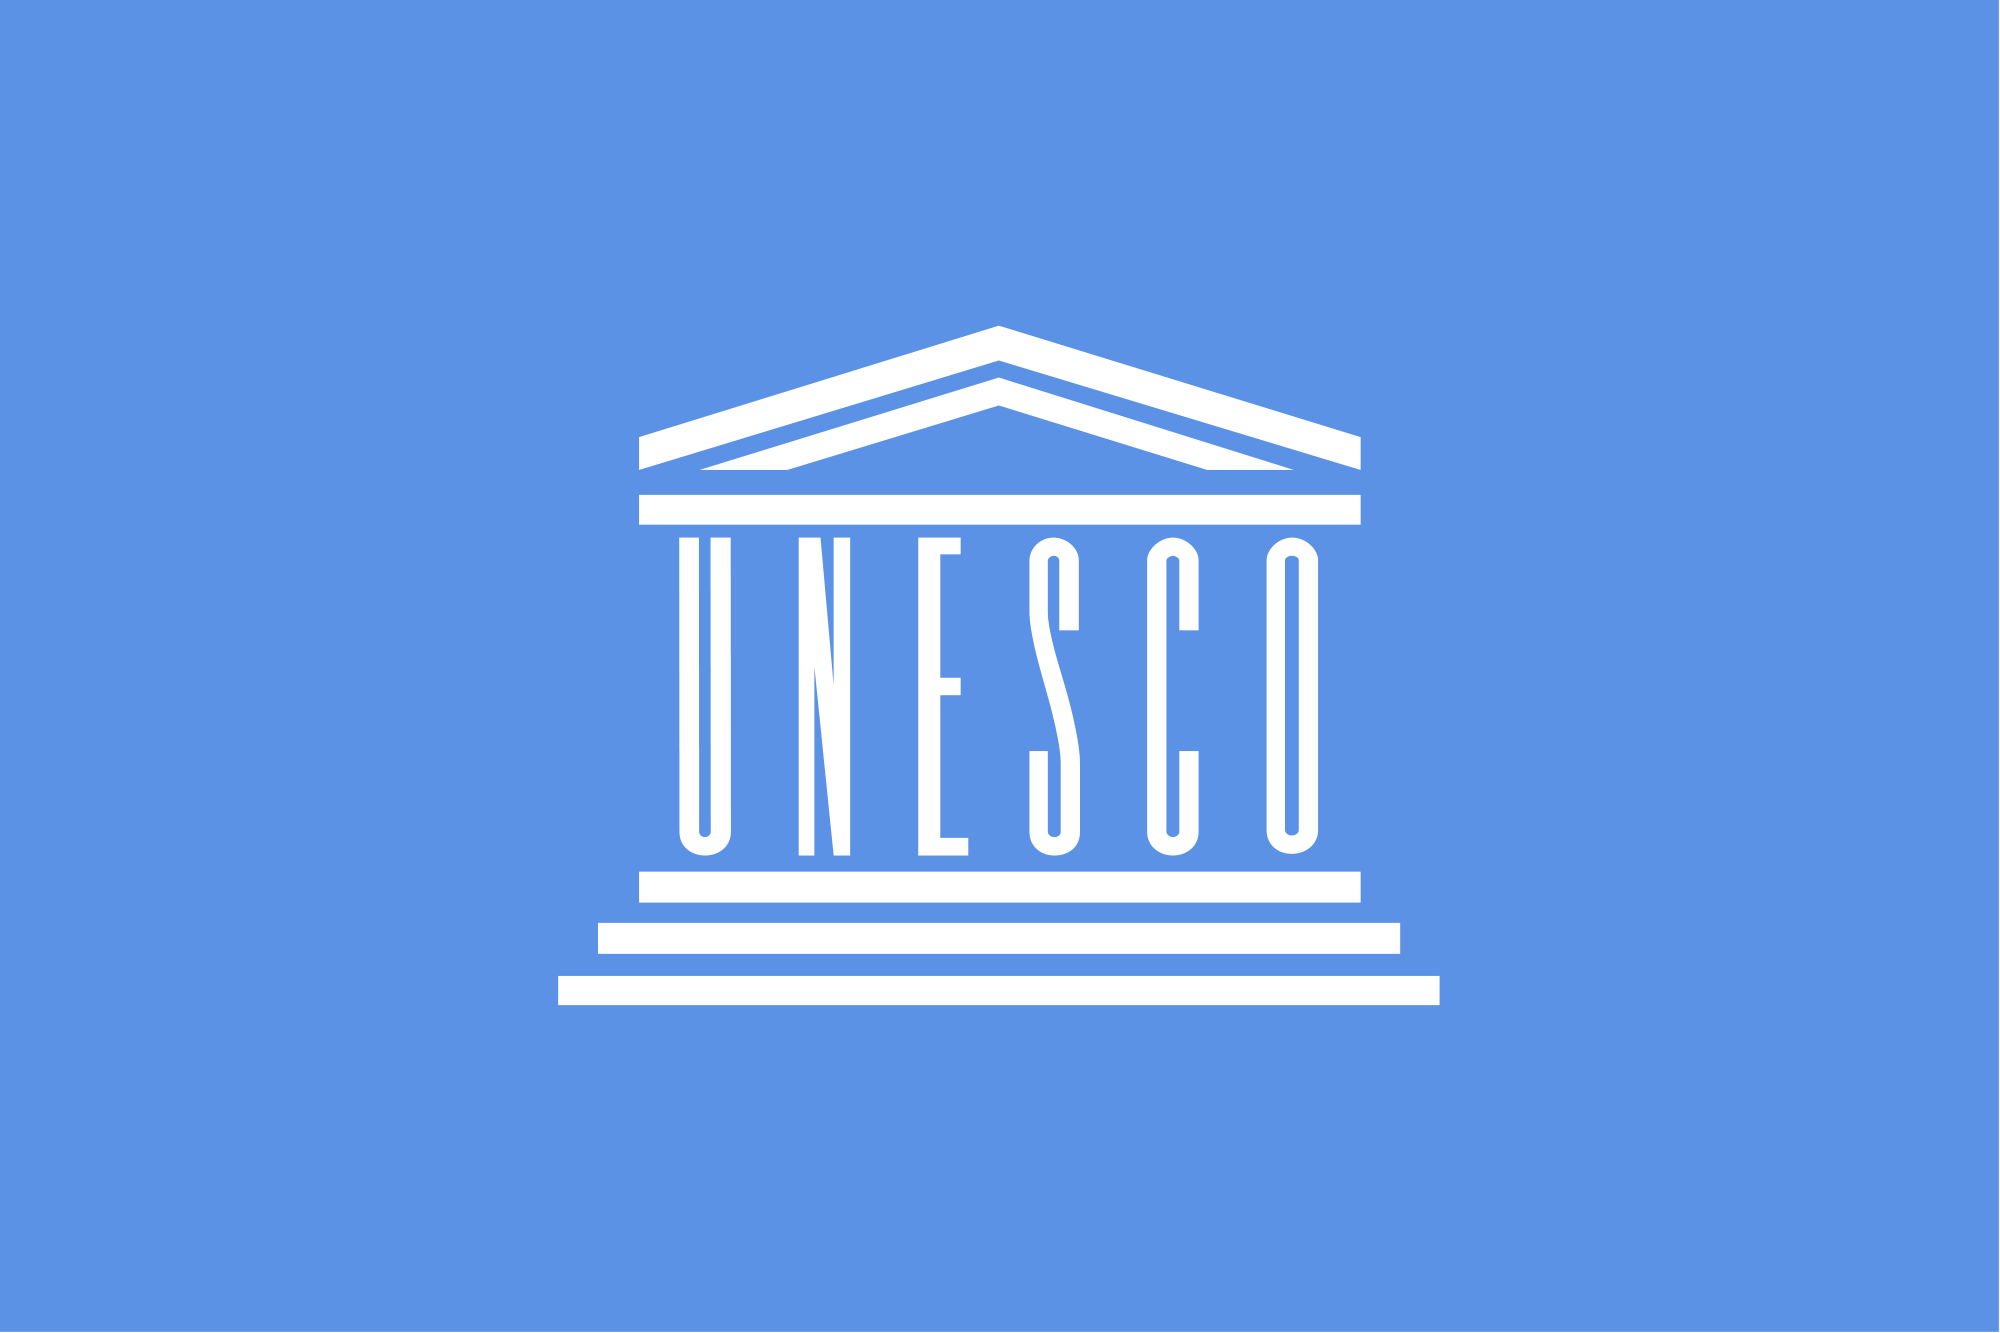 monumenti Unesco